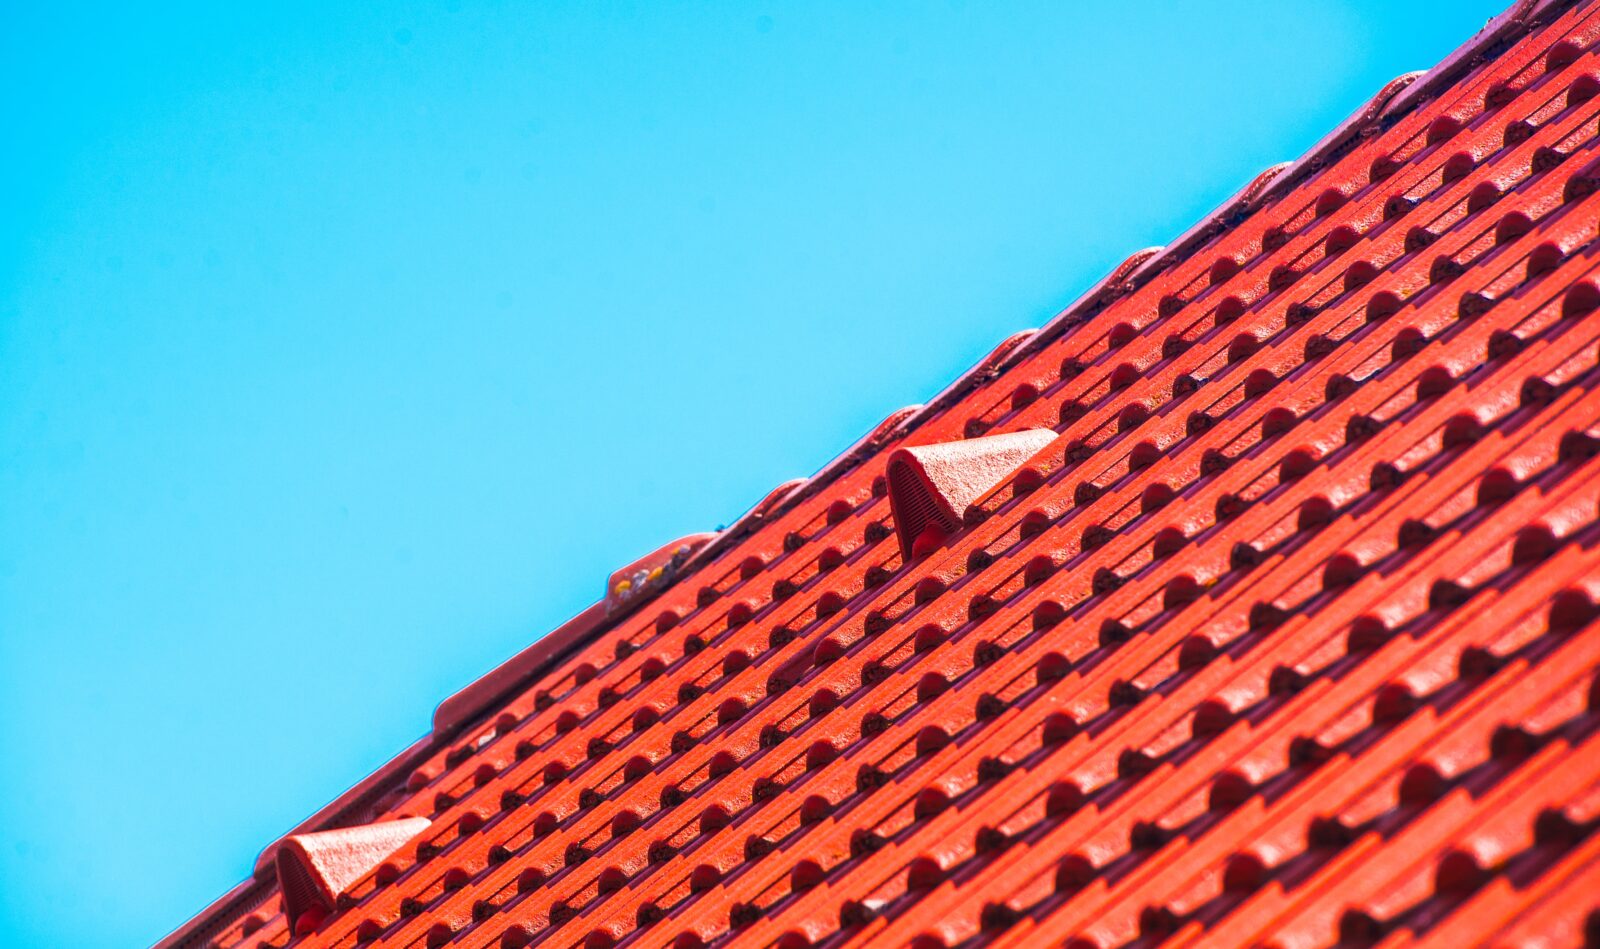 Kolor elewacji do czerwonego dachu — jaki sprawdzi się najlepiej?